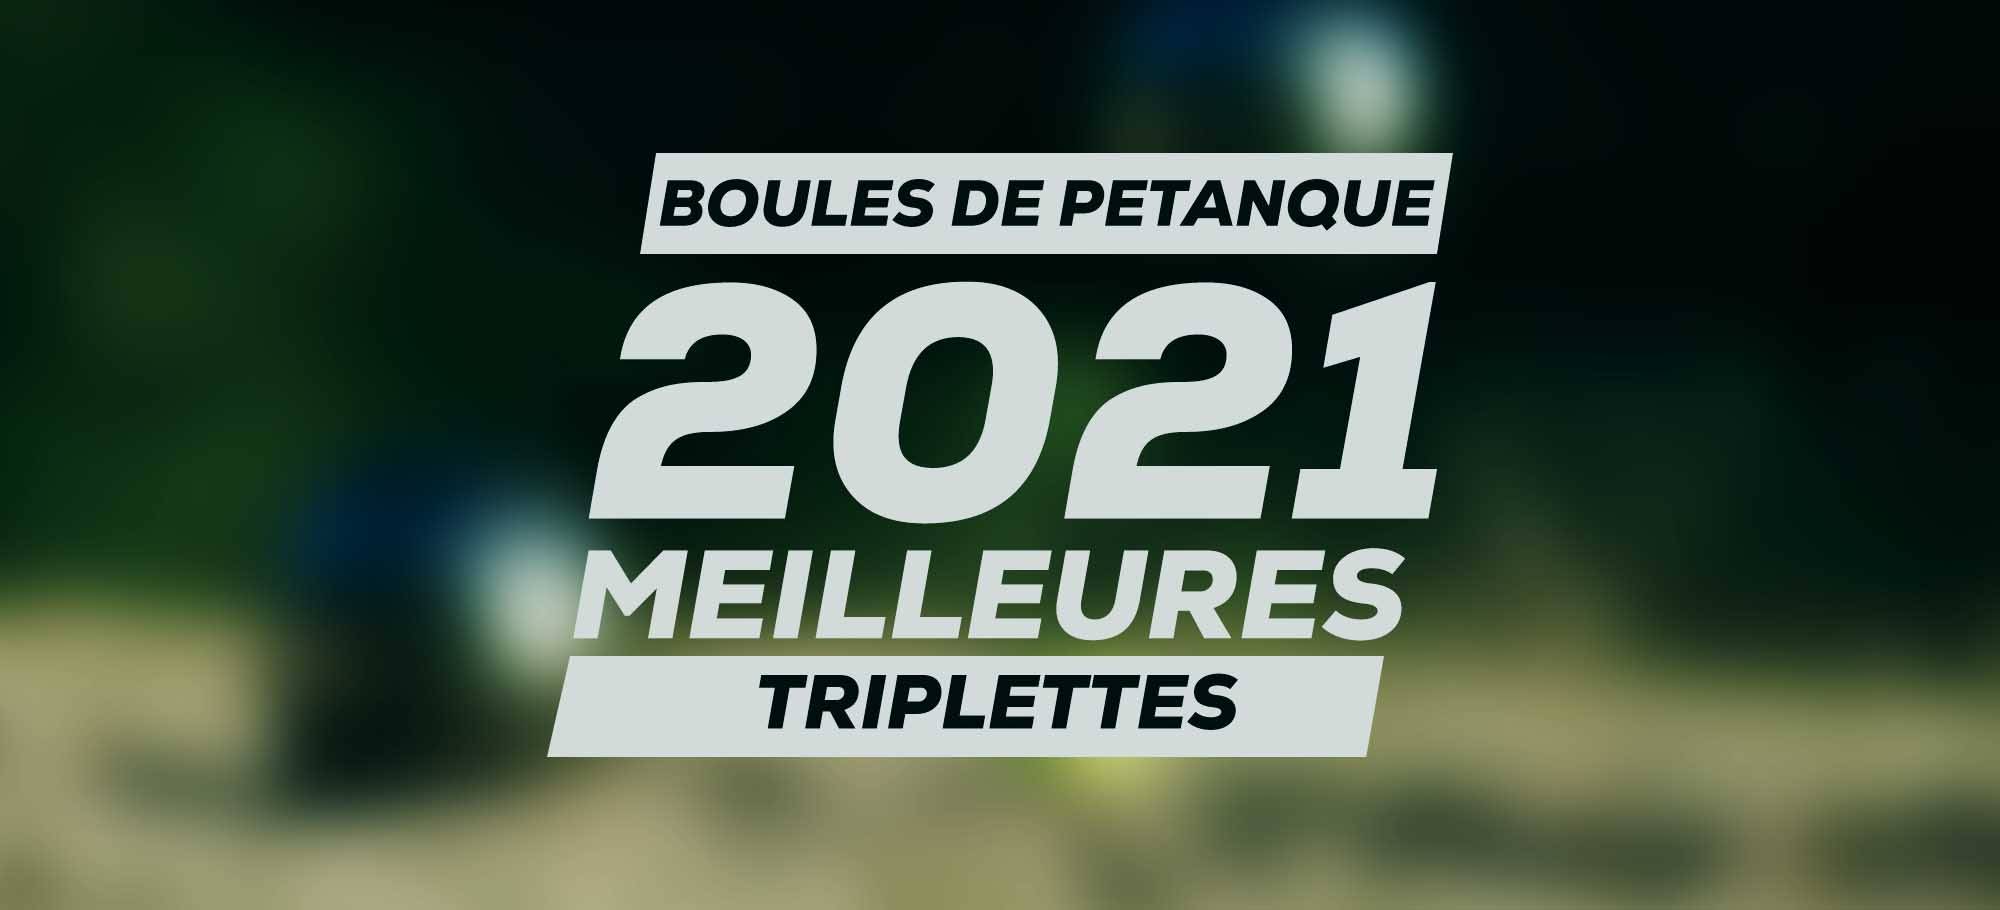 You are currently viewing Les meilleures triplettes de boules de pétanque à acheter en 2021